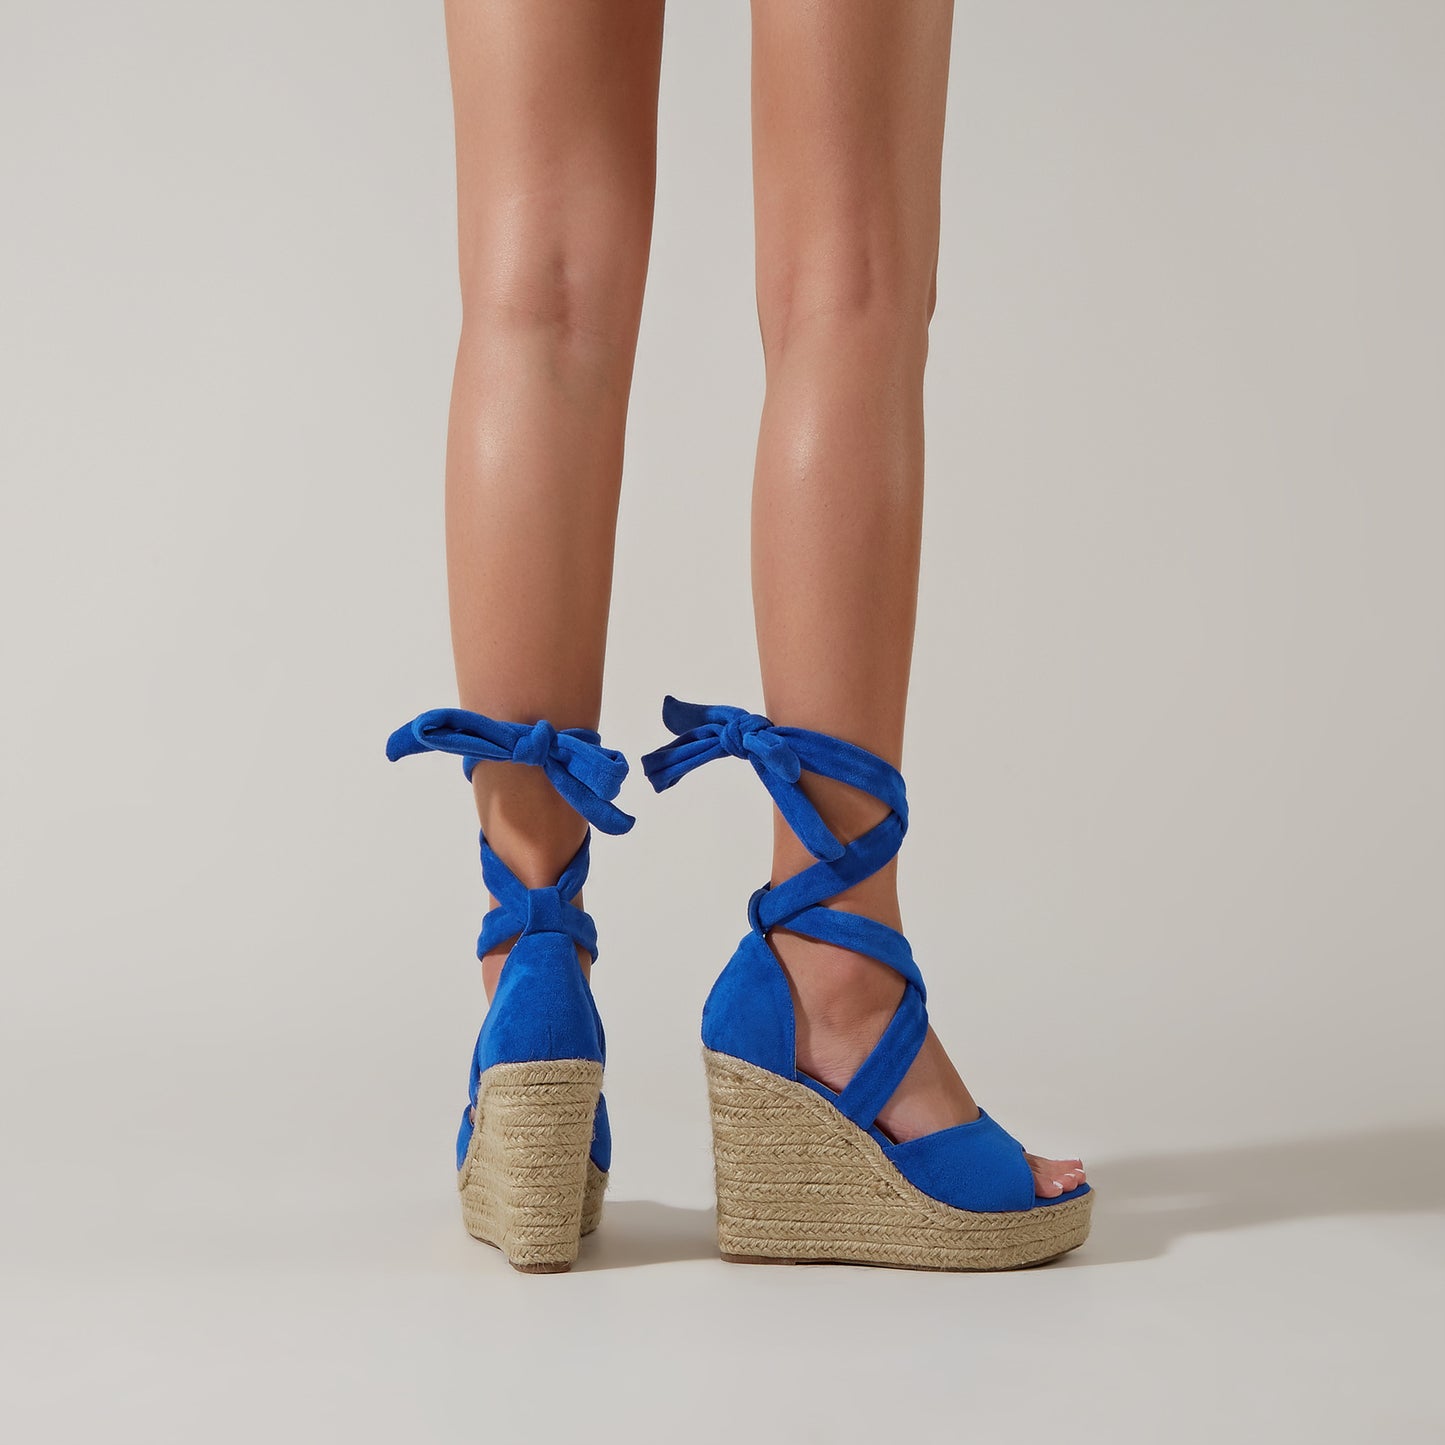 Lace Up Sandals Women's Summer Shoes Hemp Rope Bottom Wedge Heels High Heels Platform Sandals Women